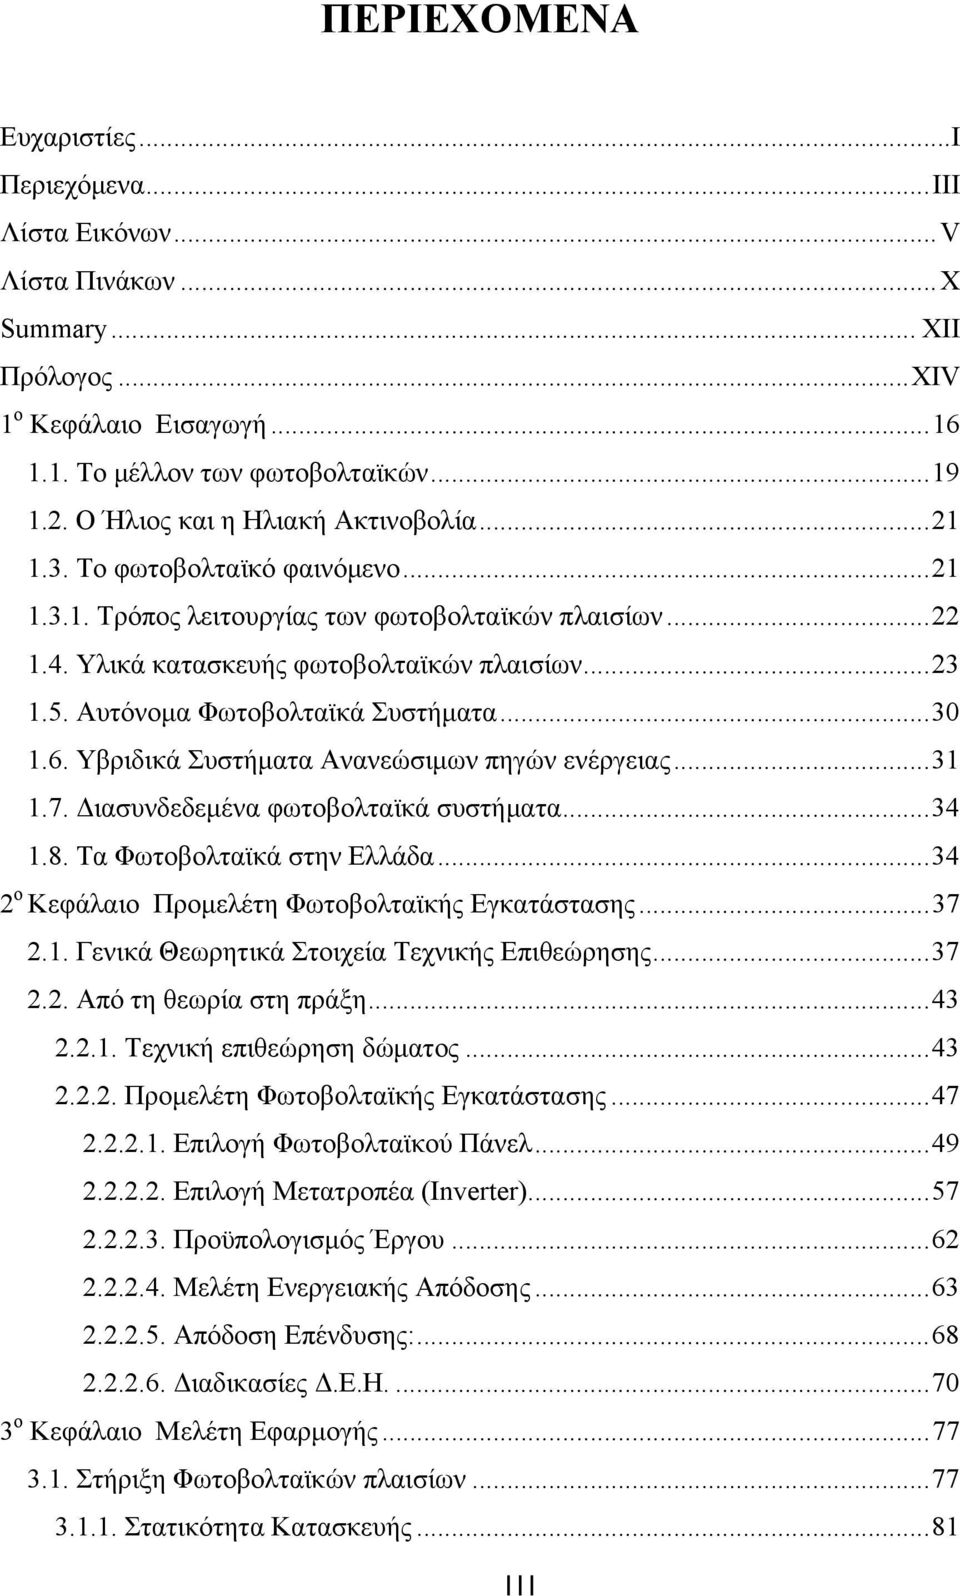 Αυτόνομα Φωτοβολταϊκά Συστήματα... 30 1.6. Υβριδικά Συστήματα Ανανεώσιμων πηγών ενέργειας... 31 1.7. Διασυνδεδεμένα φωτοβολταϊκά συστήματα... 34 1.8. Τα Φωτοβολταϊκά στην Ελλάδα.